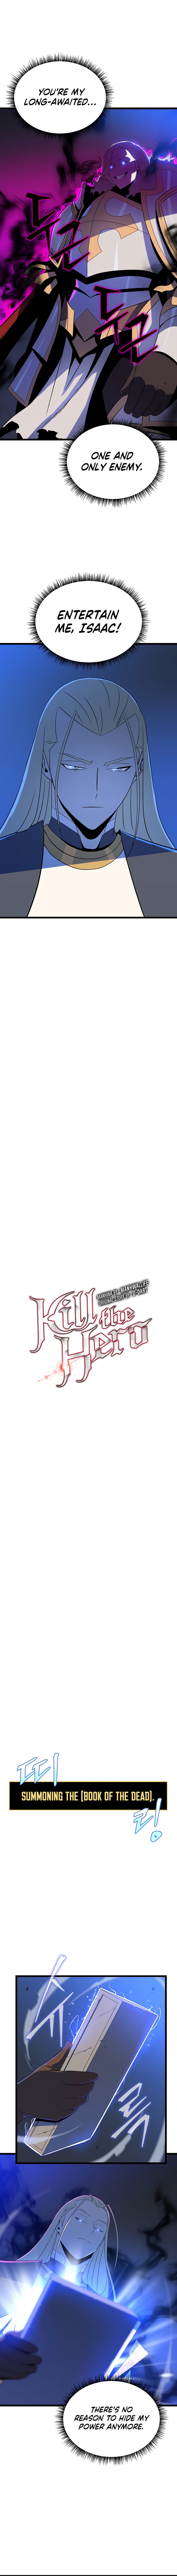 Kill The Hero image